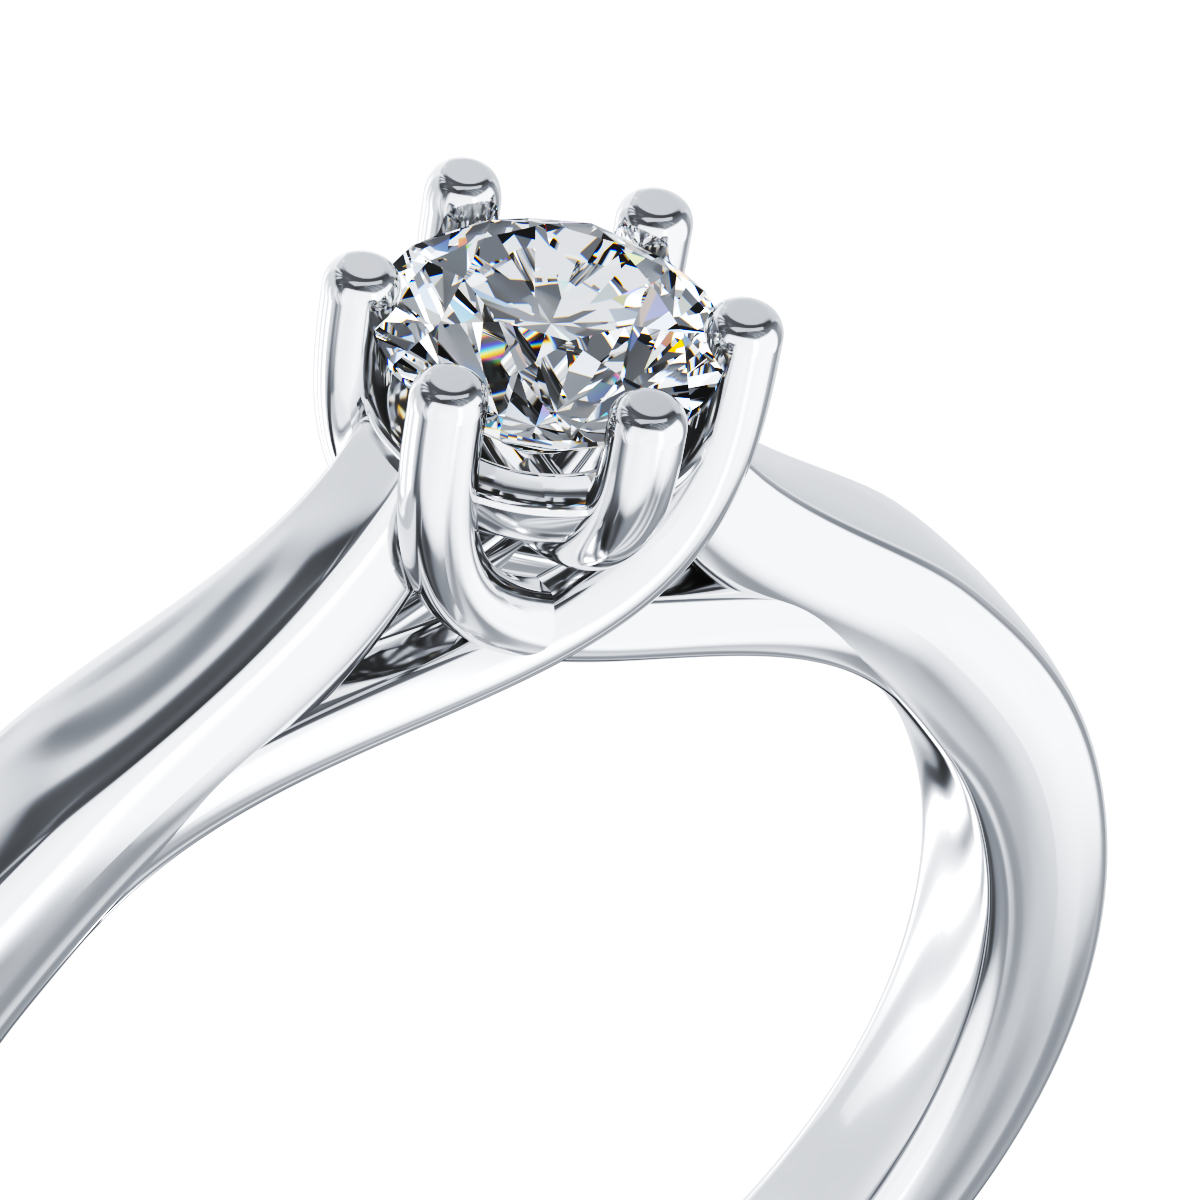 Poze Inel de logodna din aur alb de 18K cu un diamant solitaire de 0.14ct